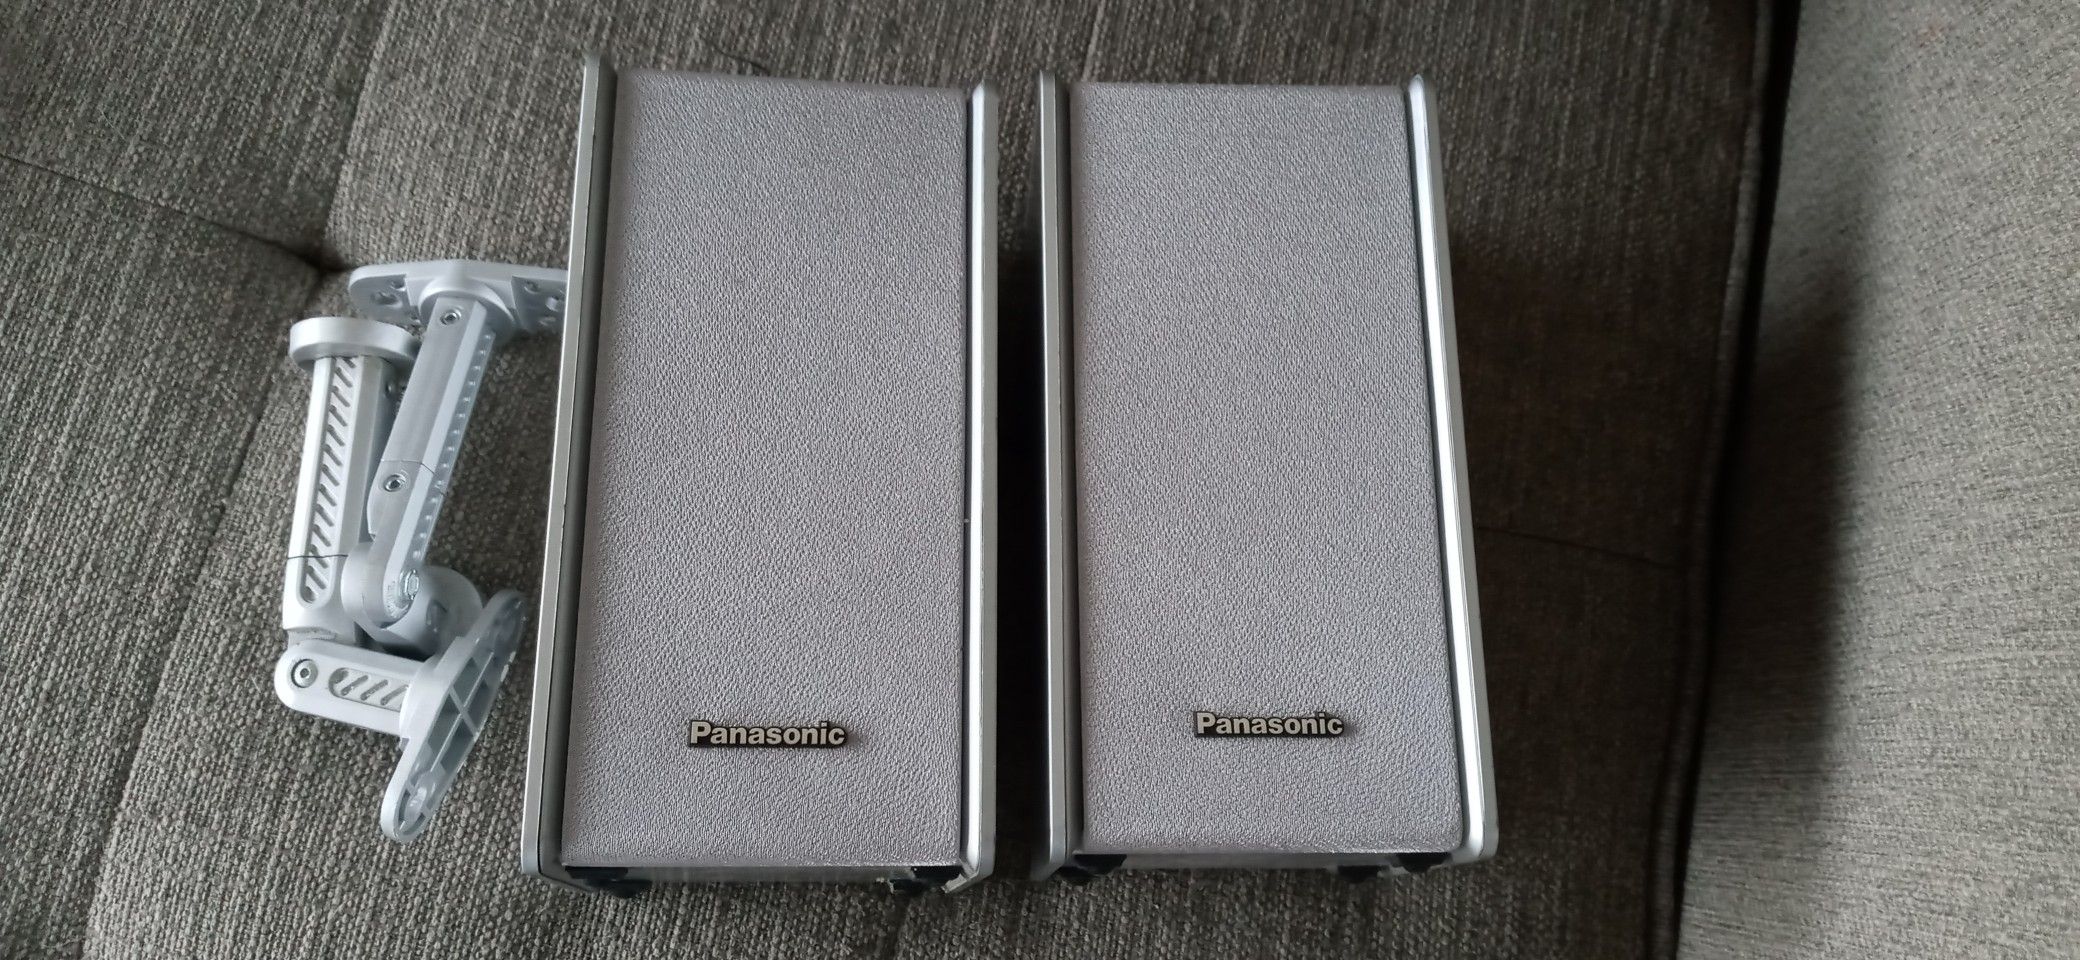 Pair of Panasonic Speakers